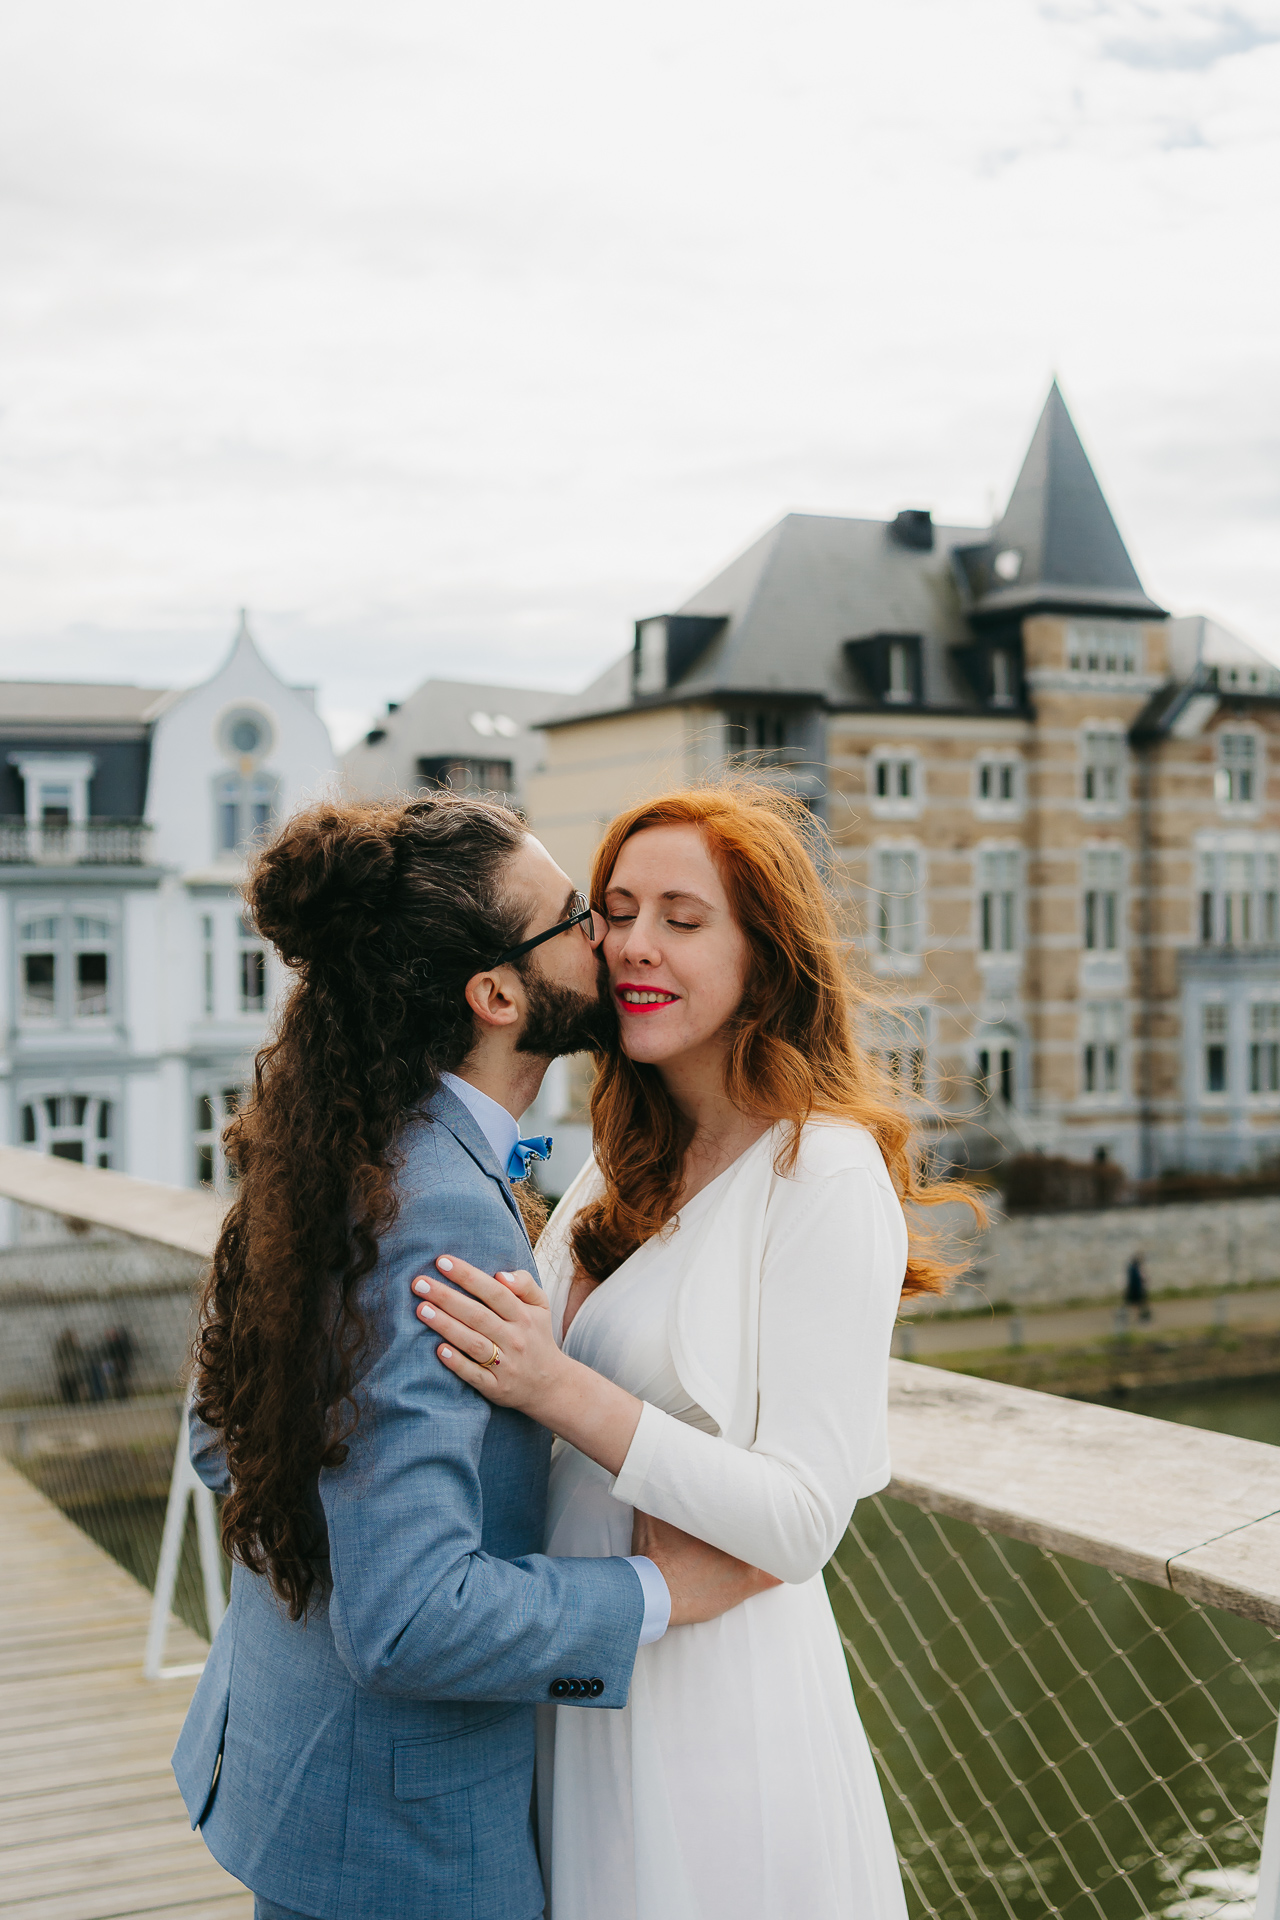 Un couple s'embrassant et partageant un moment sur un pont avec un bâtiment historique en arrière-plan.